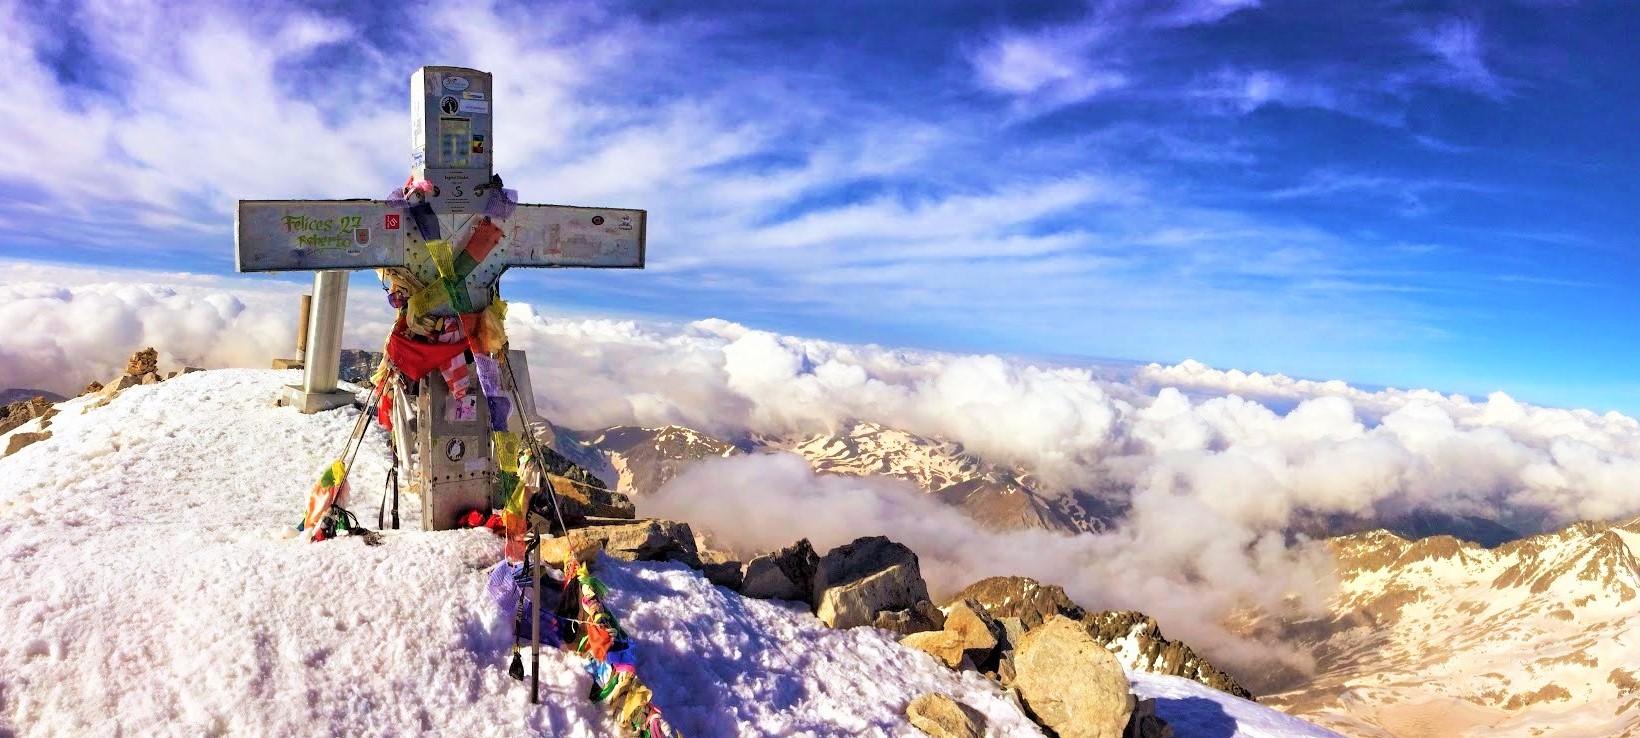 ¿Cual Es El Pico Mas Alto De La Peninsula?